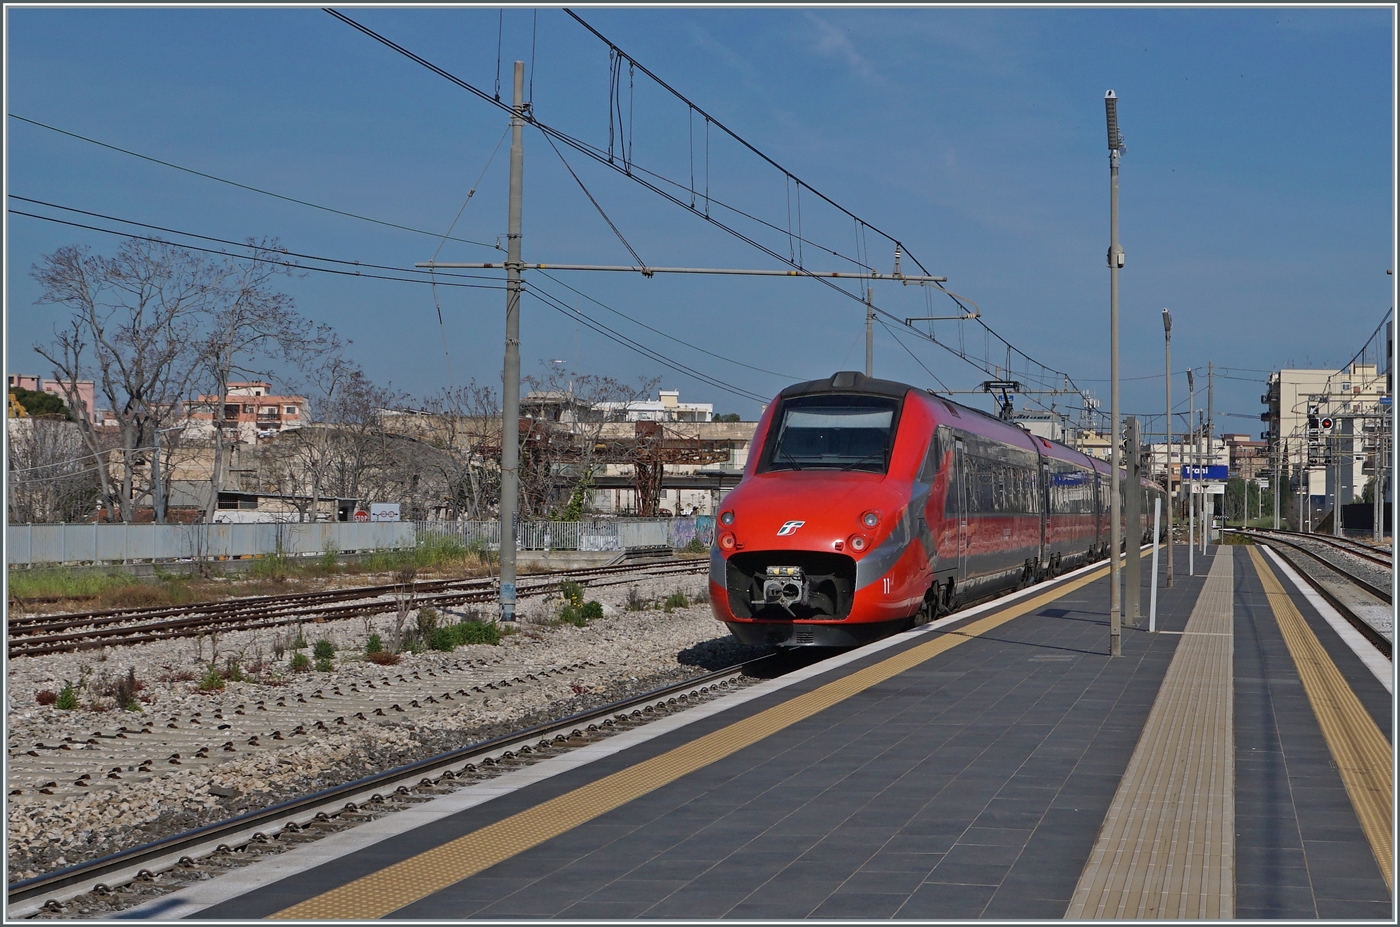 Der FS Trenitalia ETR 700 011 (ex Fyra) ist als Frecciarossa 8816 von Lecce nach Venezia S.L. unterwegs und fährt mit hoher Geschwindigkeit durch den Bahnhof von Trani. 

22. April 2023